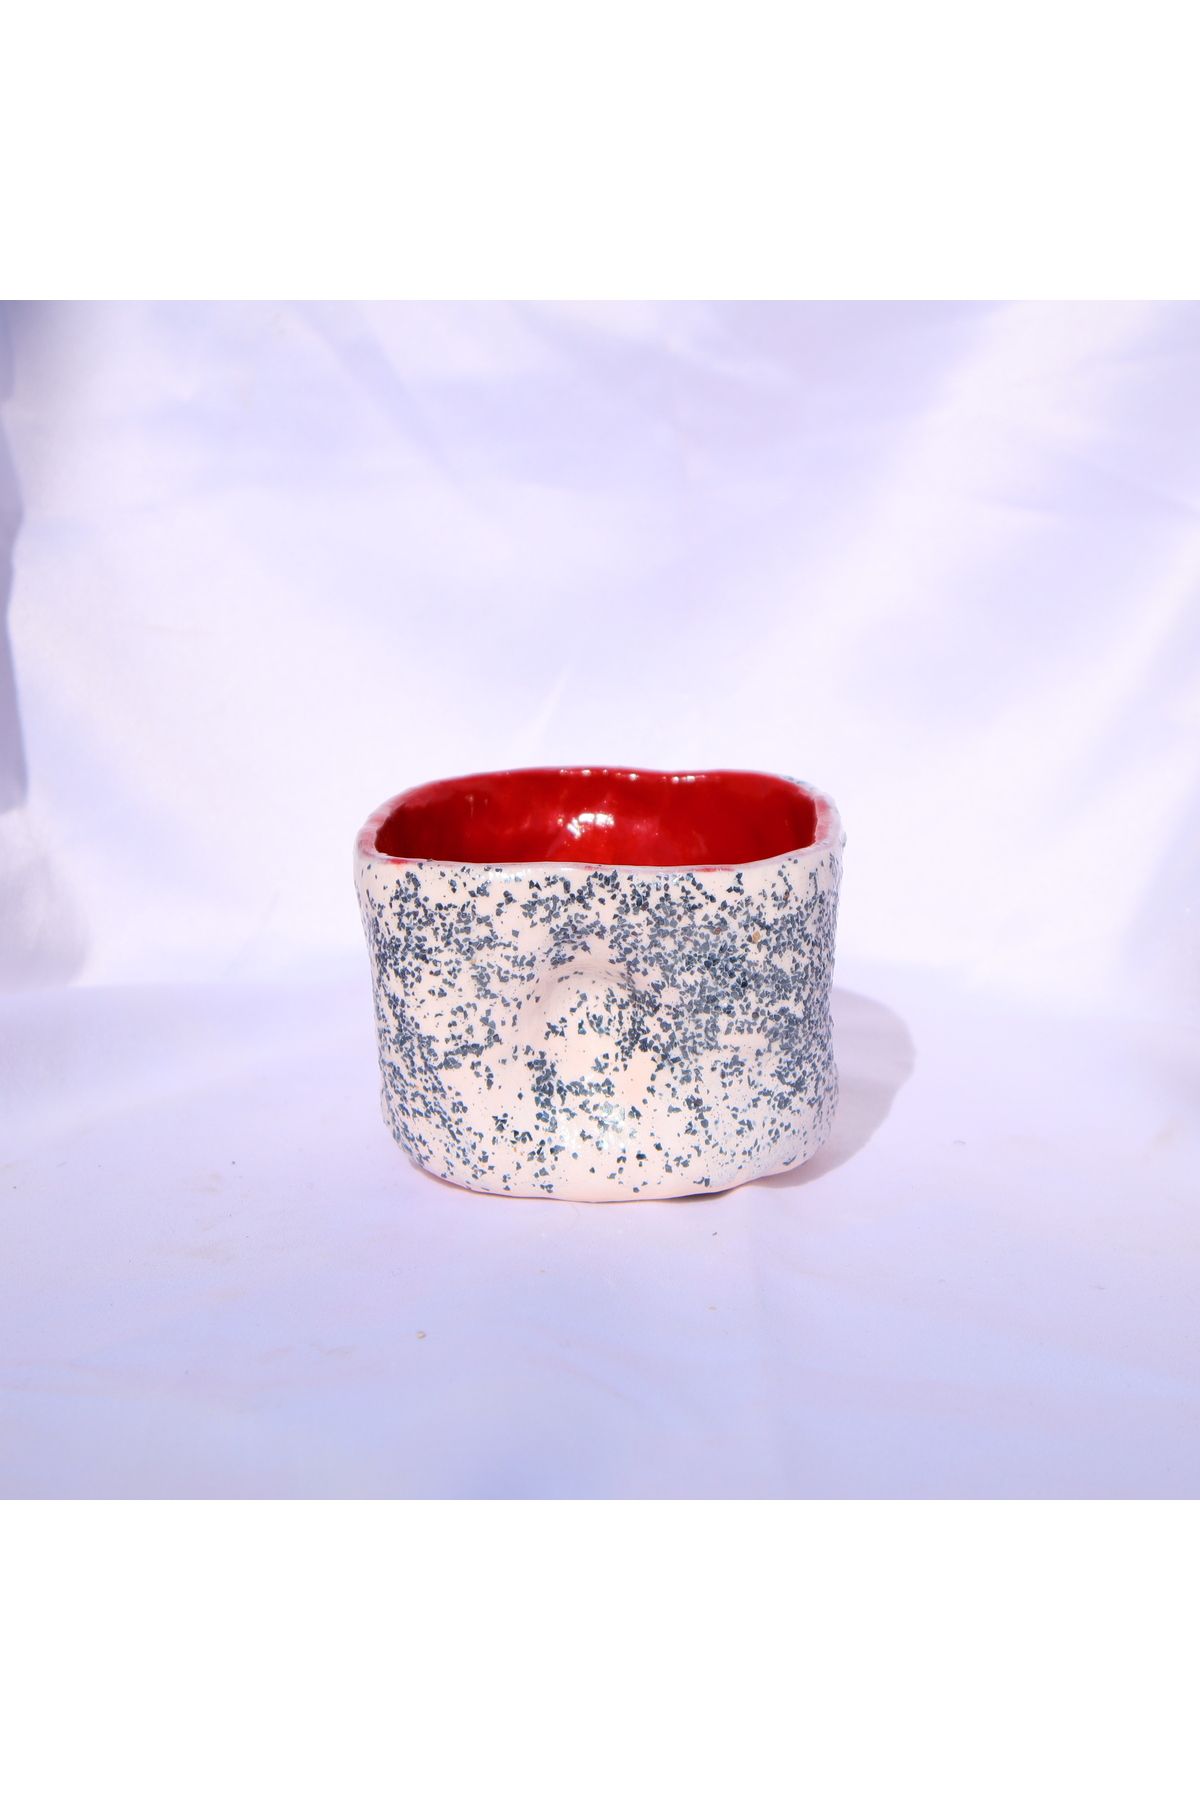 Lily & Loly Ceramics Eşsiz Tasarıma Sahip Beyaz Işıltılı Kulpsuz El Yapımı Seramik Kupa 200ml